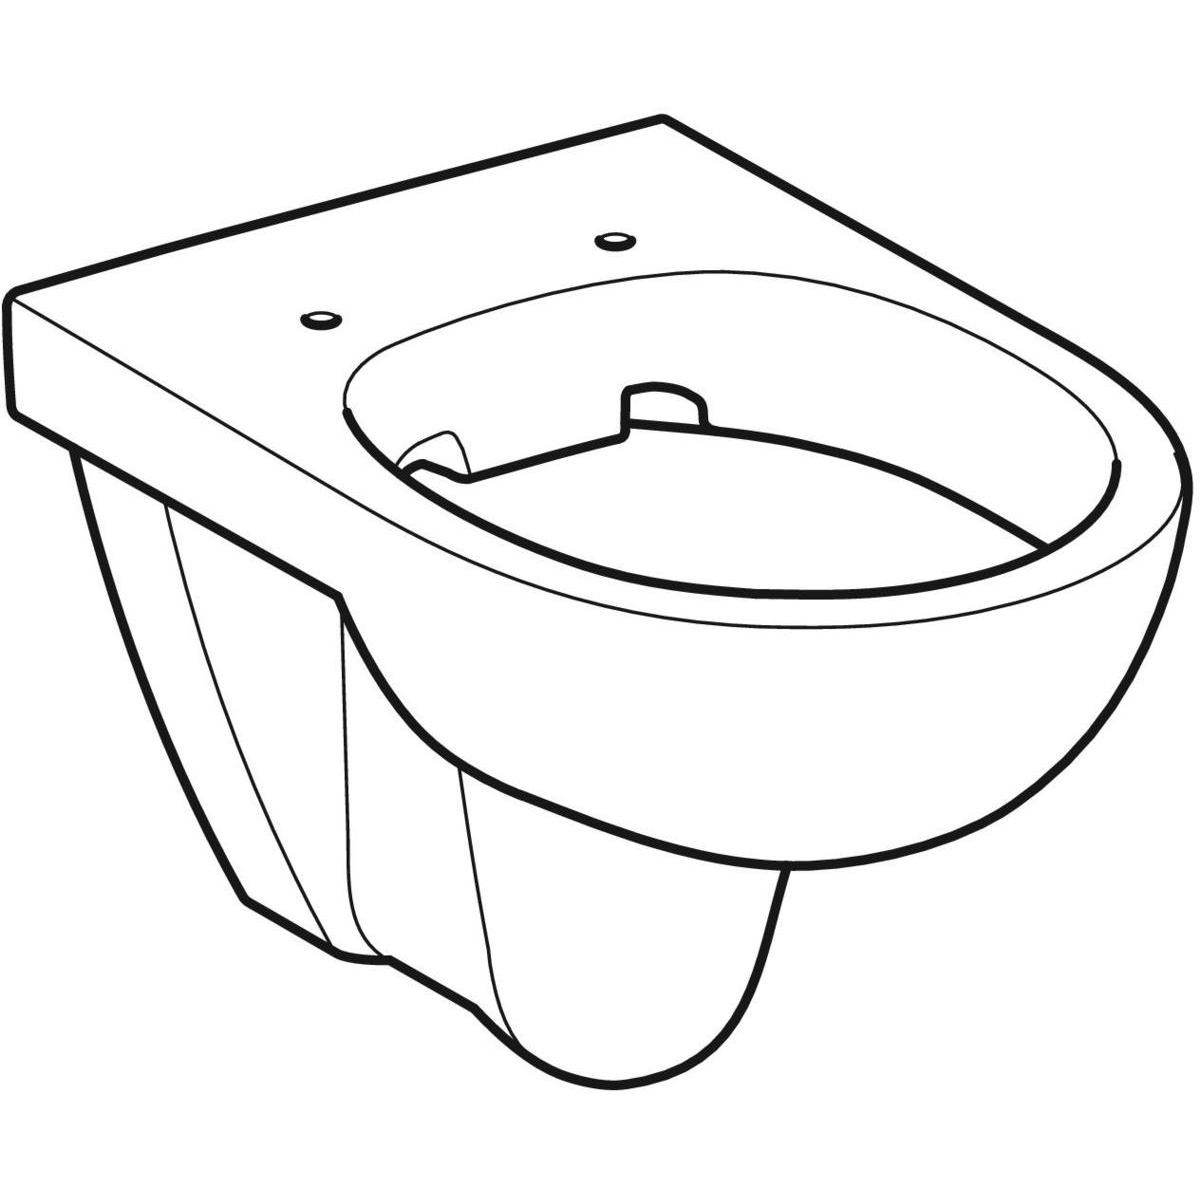 Geberit 280 basic WC suspendu à fond creux 35x53cm avec abattant avec  couvercle Blanc - S8P01400000G 